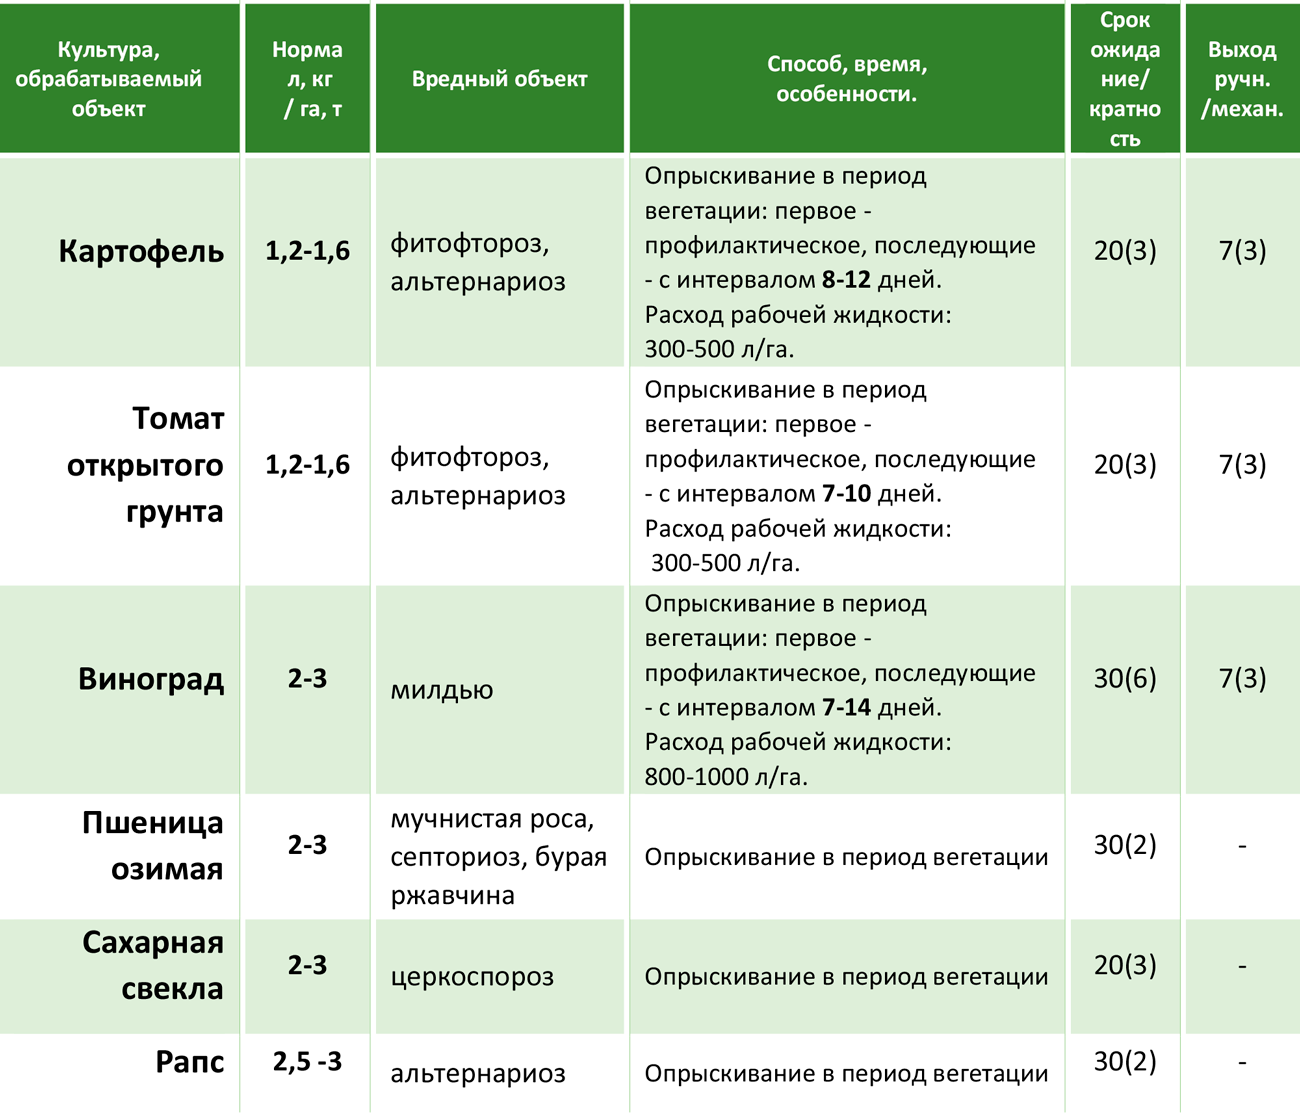 Фунгицид | справочник пестициды.ru